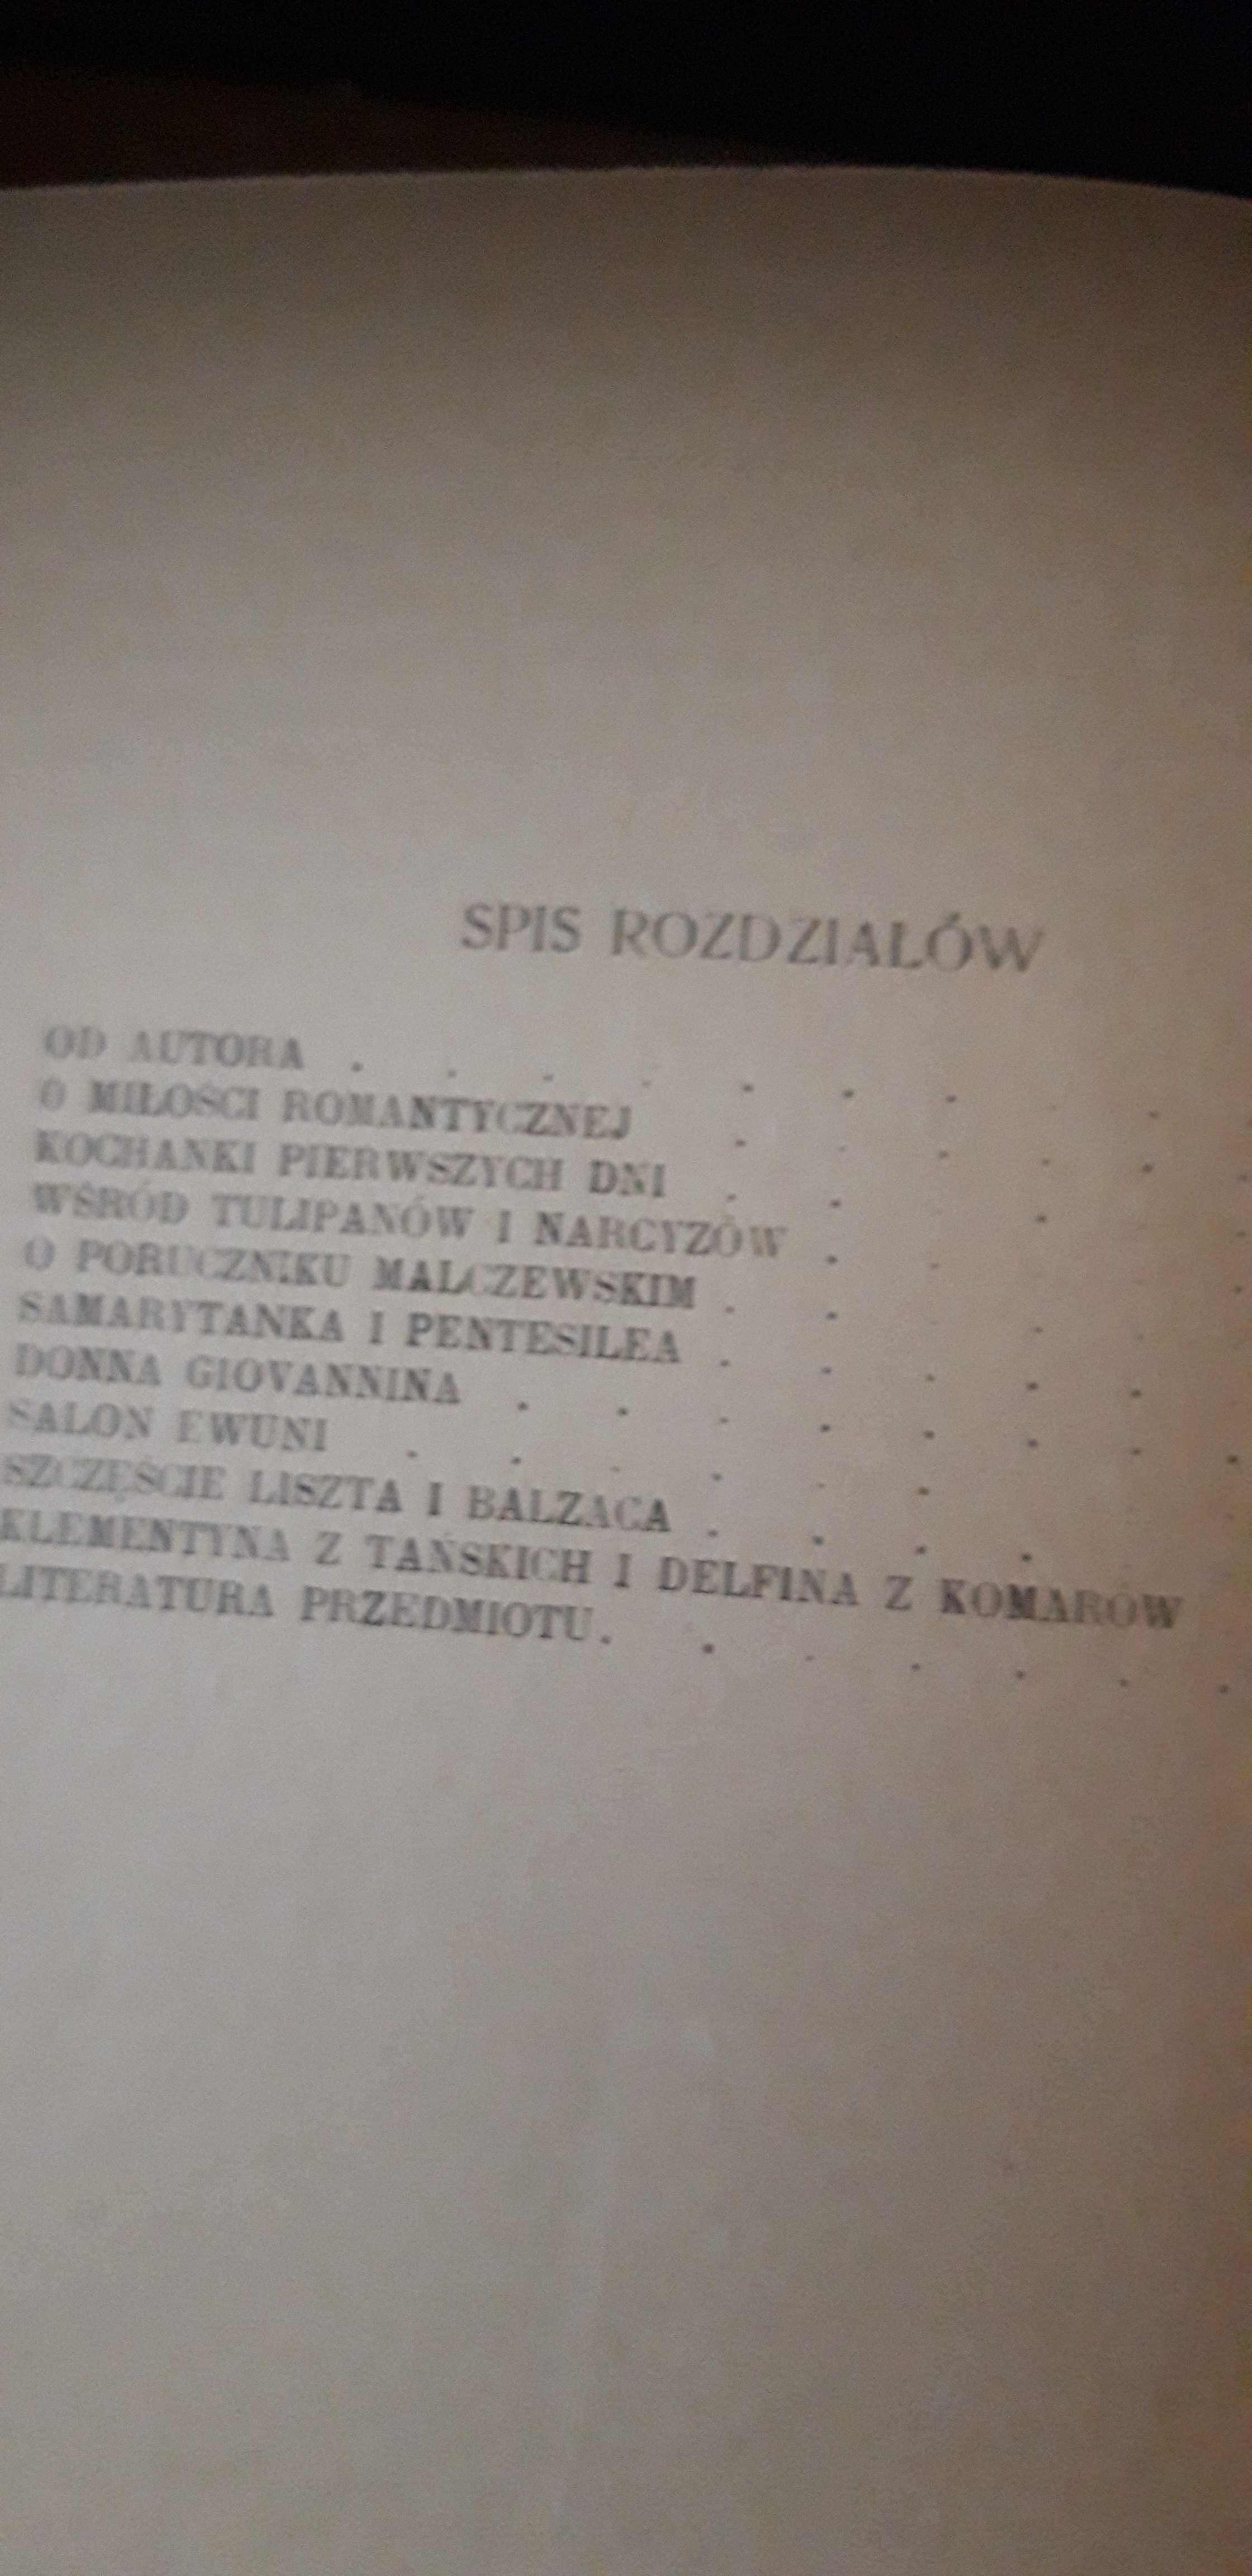 O miłości romantycznej-Wasylewski-Lwów1921,wyd.1,specjalne